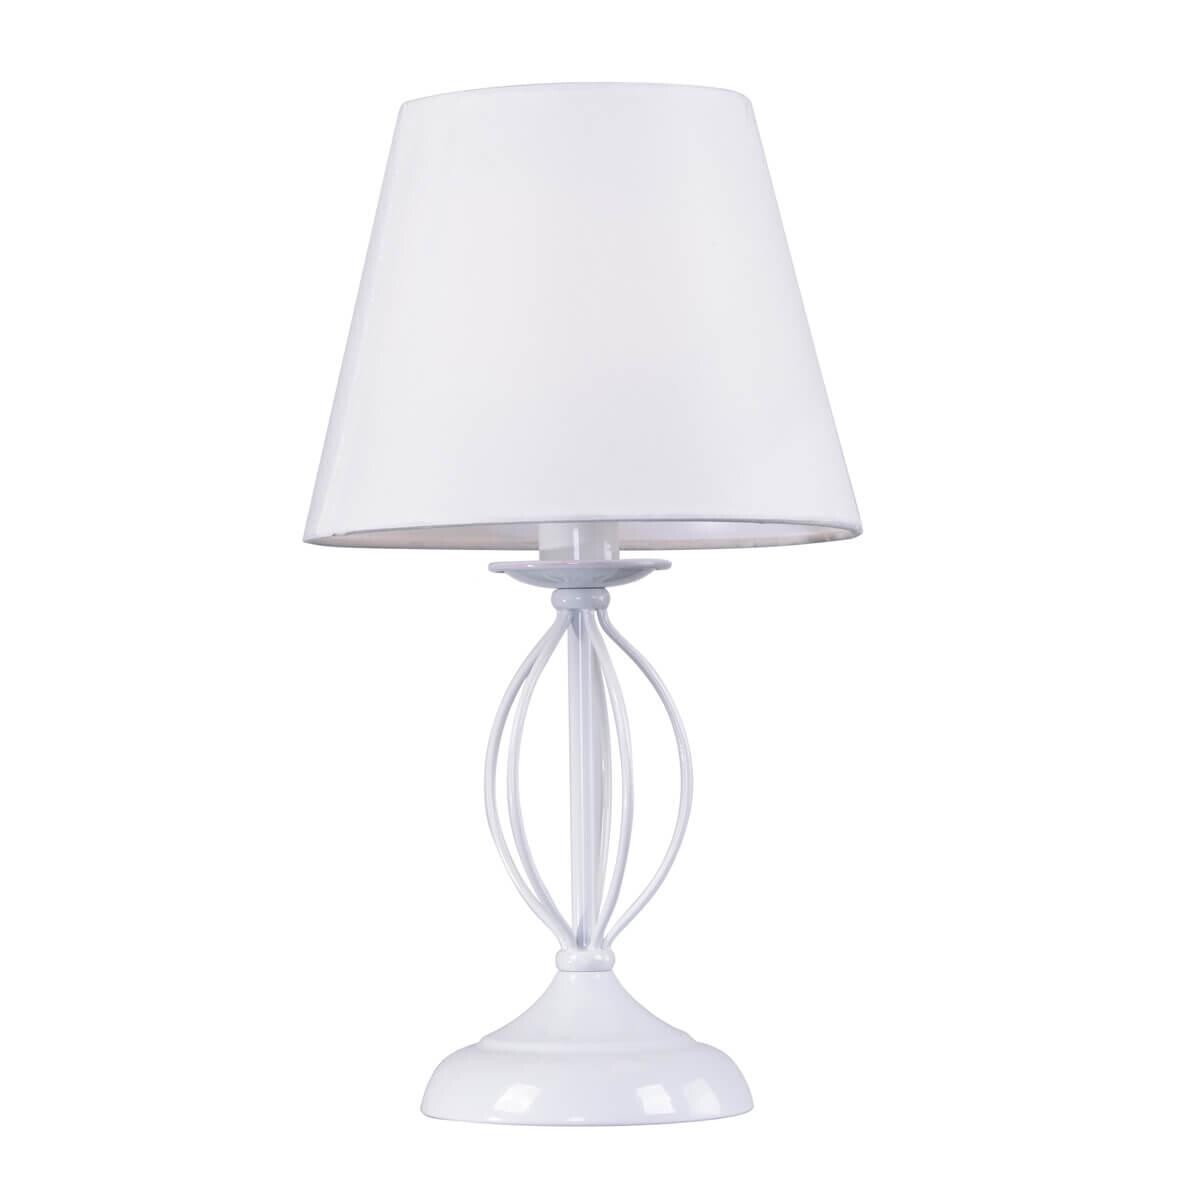 Лампа настольная белая Facil 2043-501